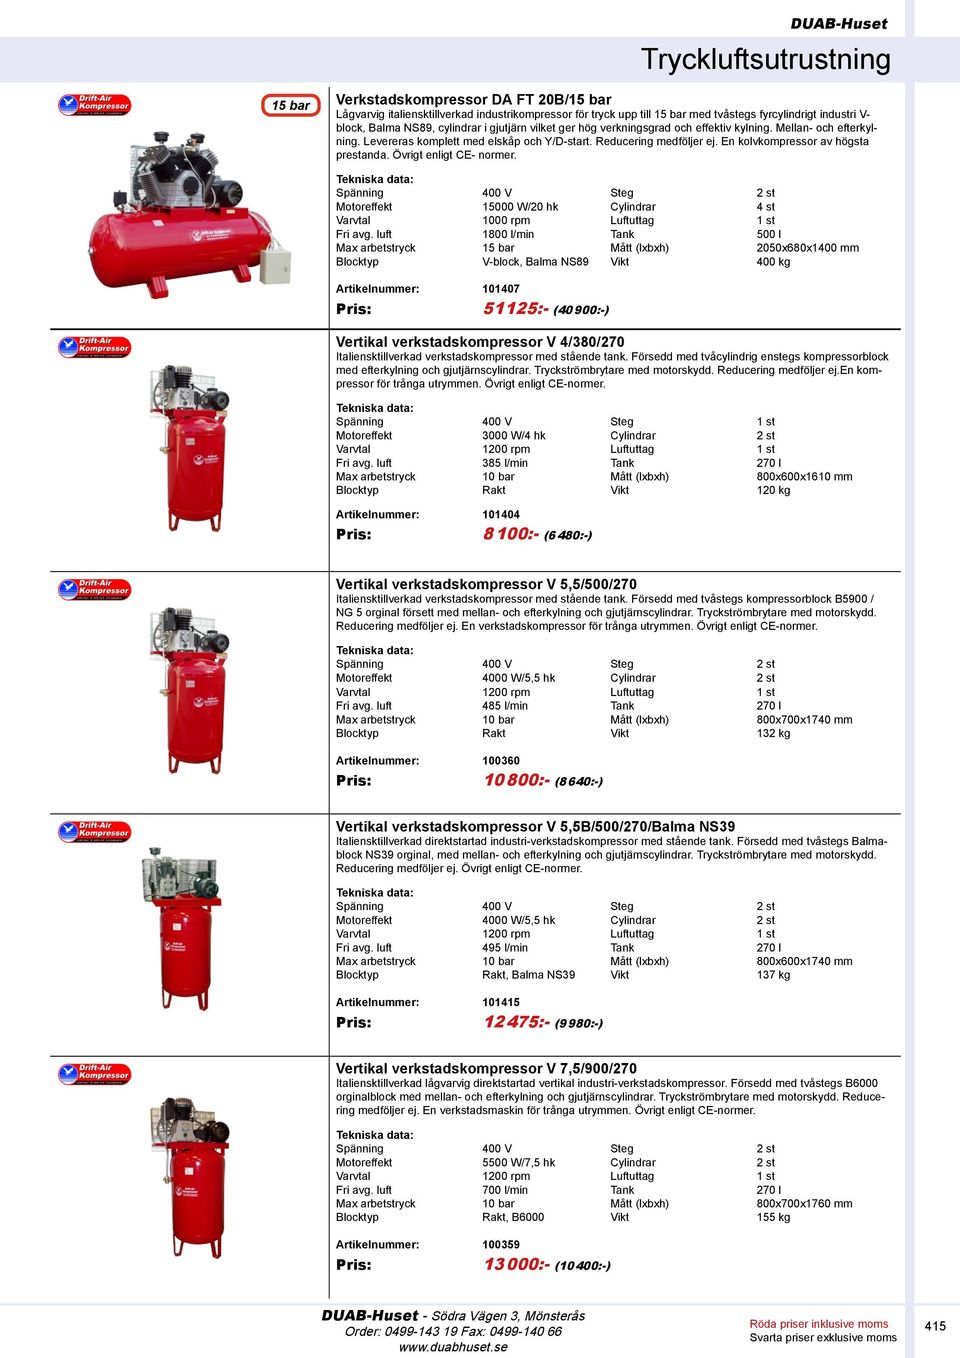 Övrigt enligt CE- normer. Motoreffekt 15000 W/20 hk Cylindrar 4 st Varvtal 1000 rpm Luftuttag 1 st Fri avg.